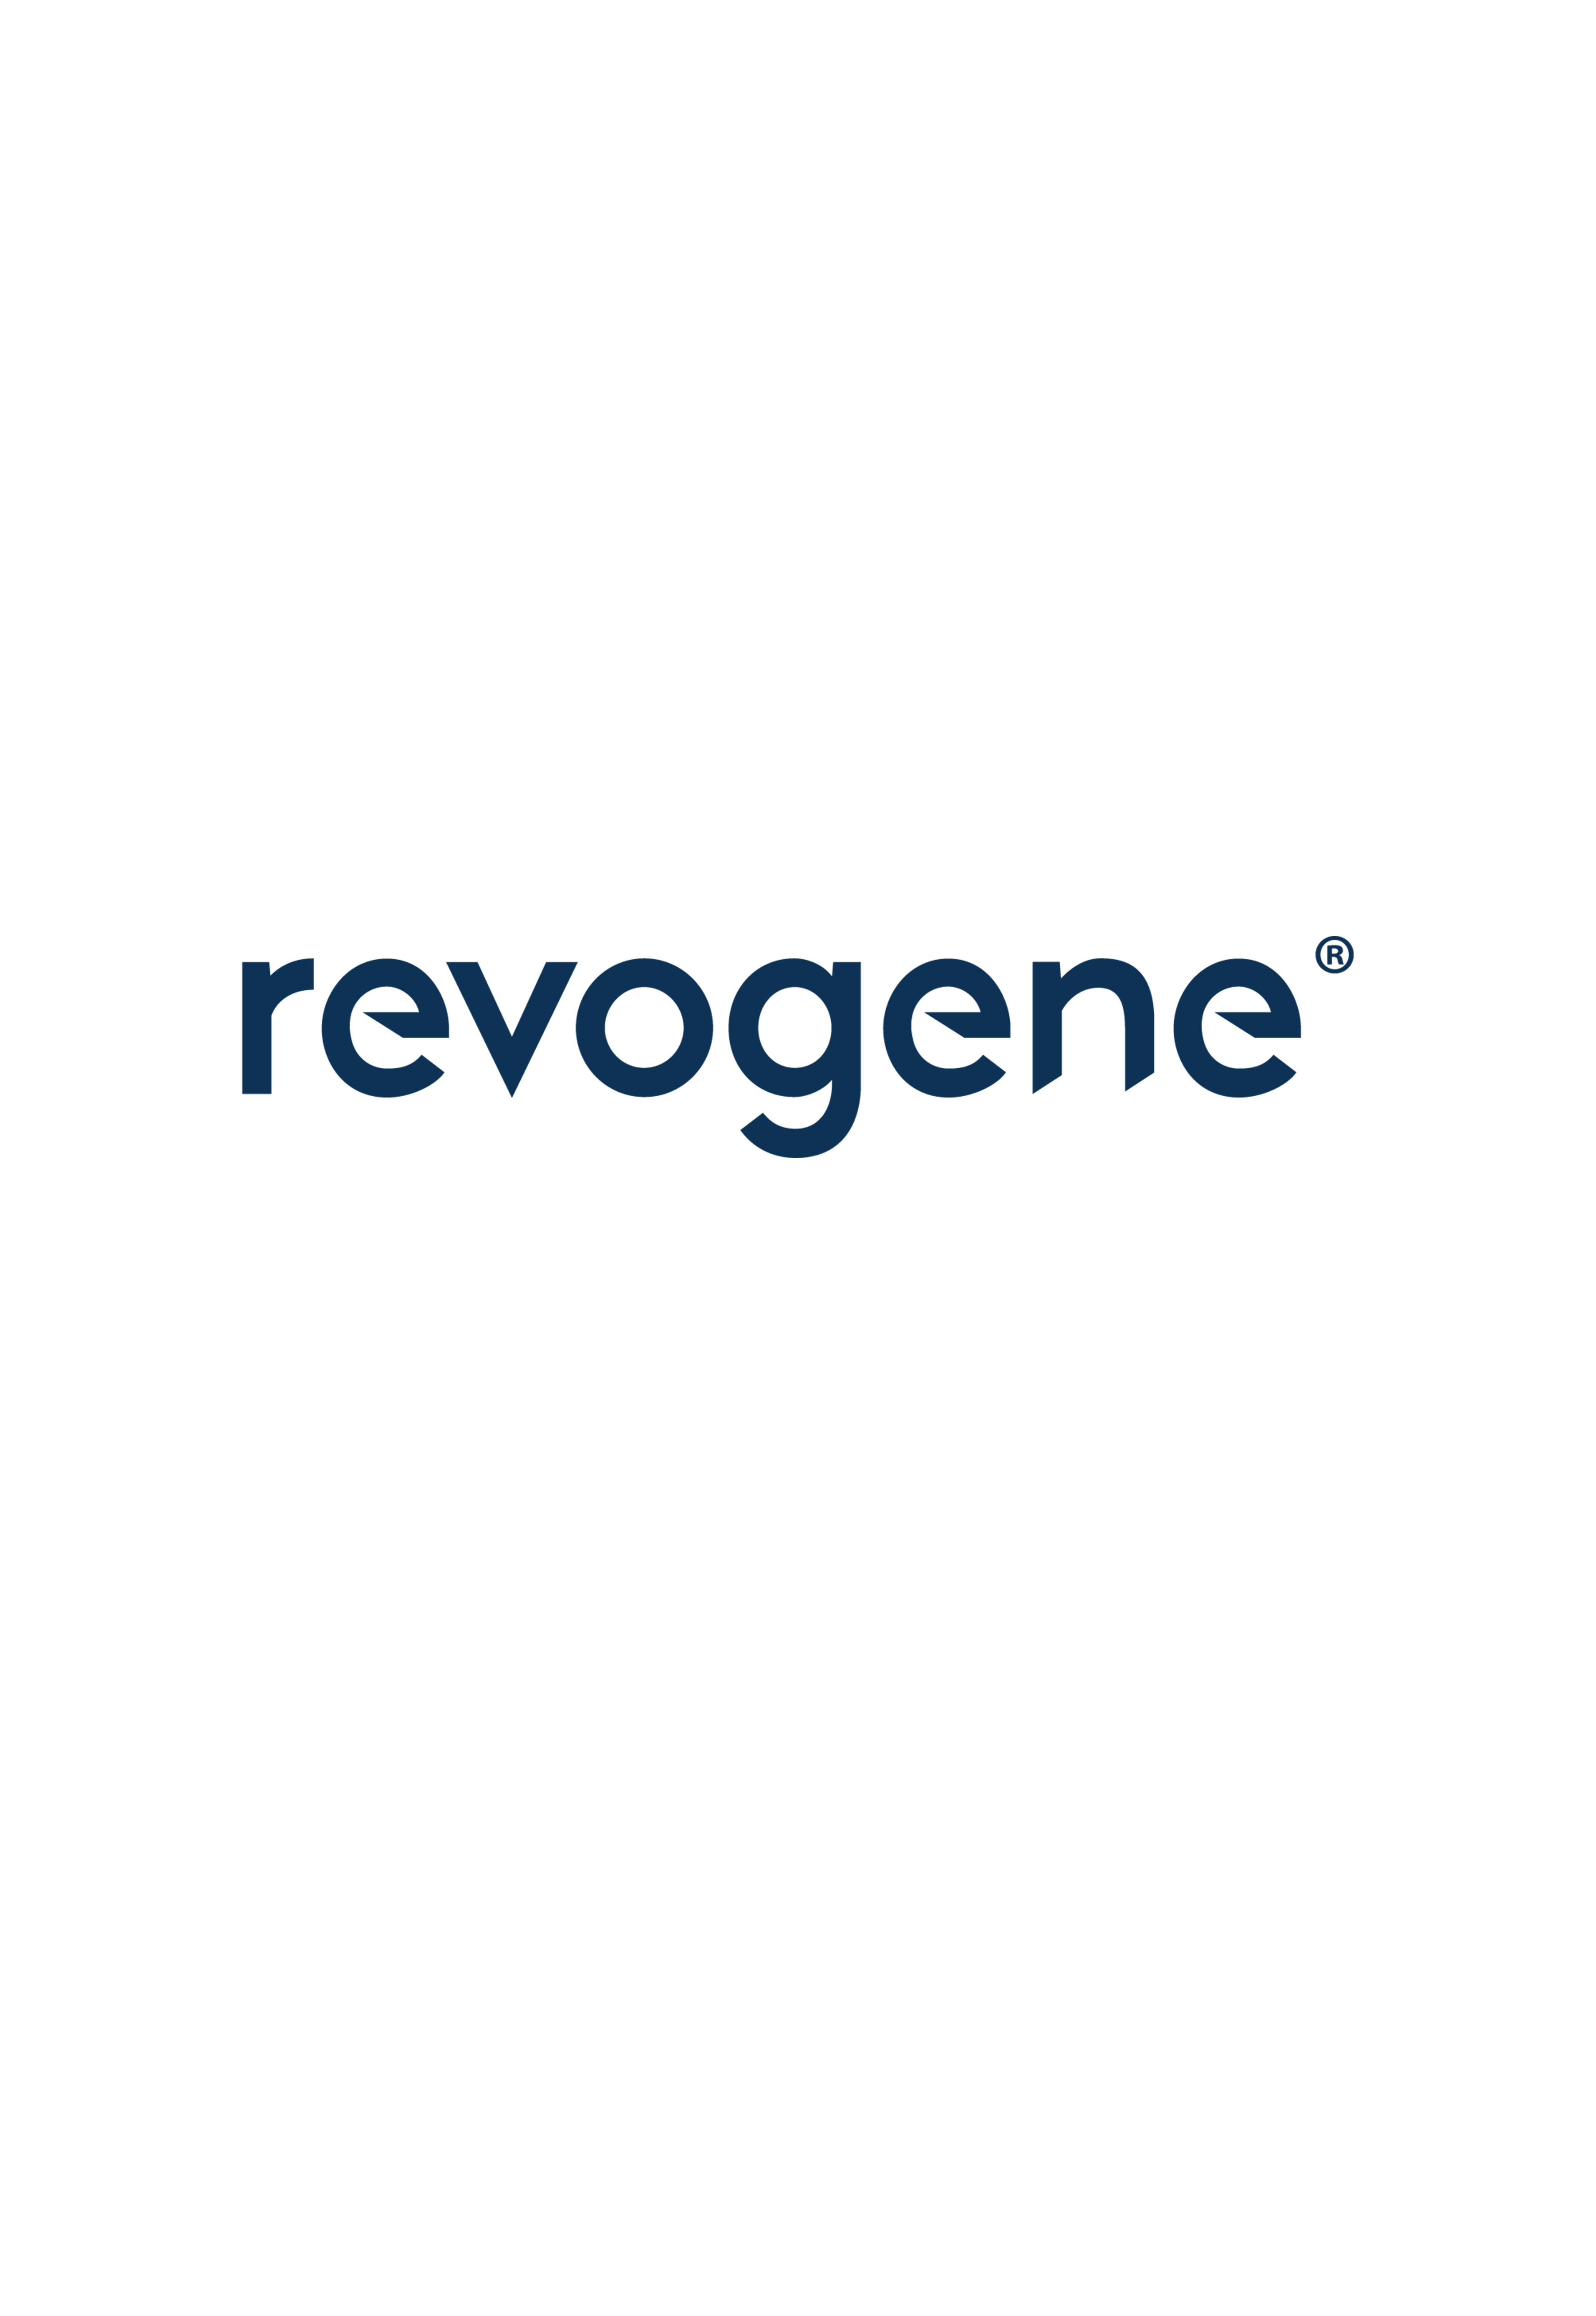 revogene logo